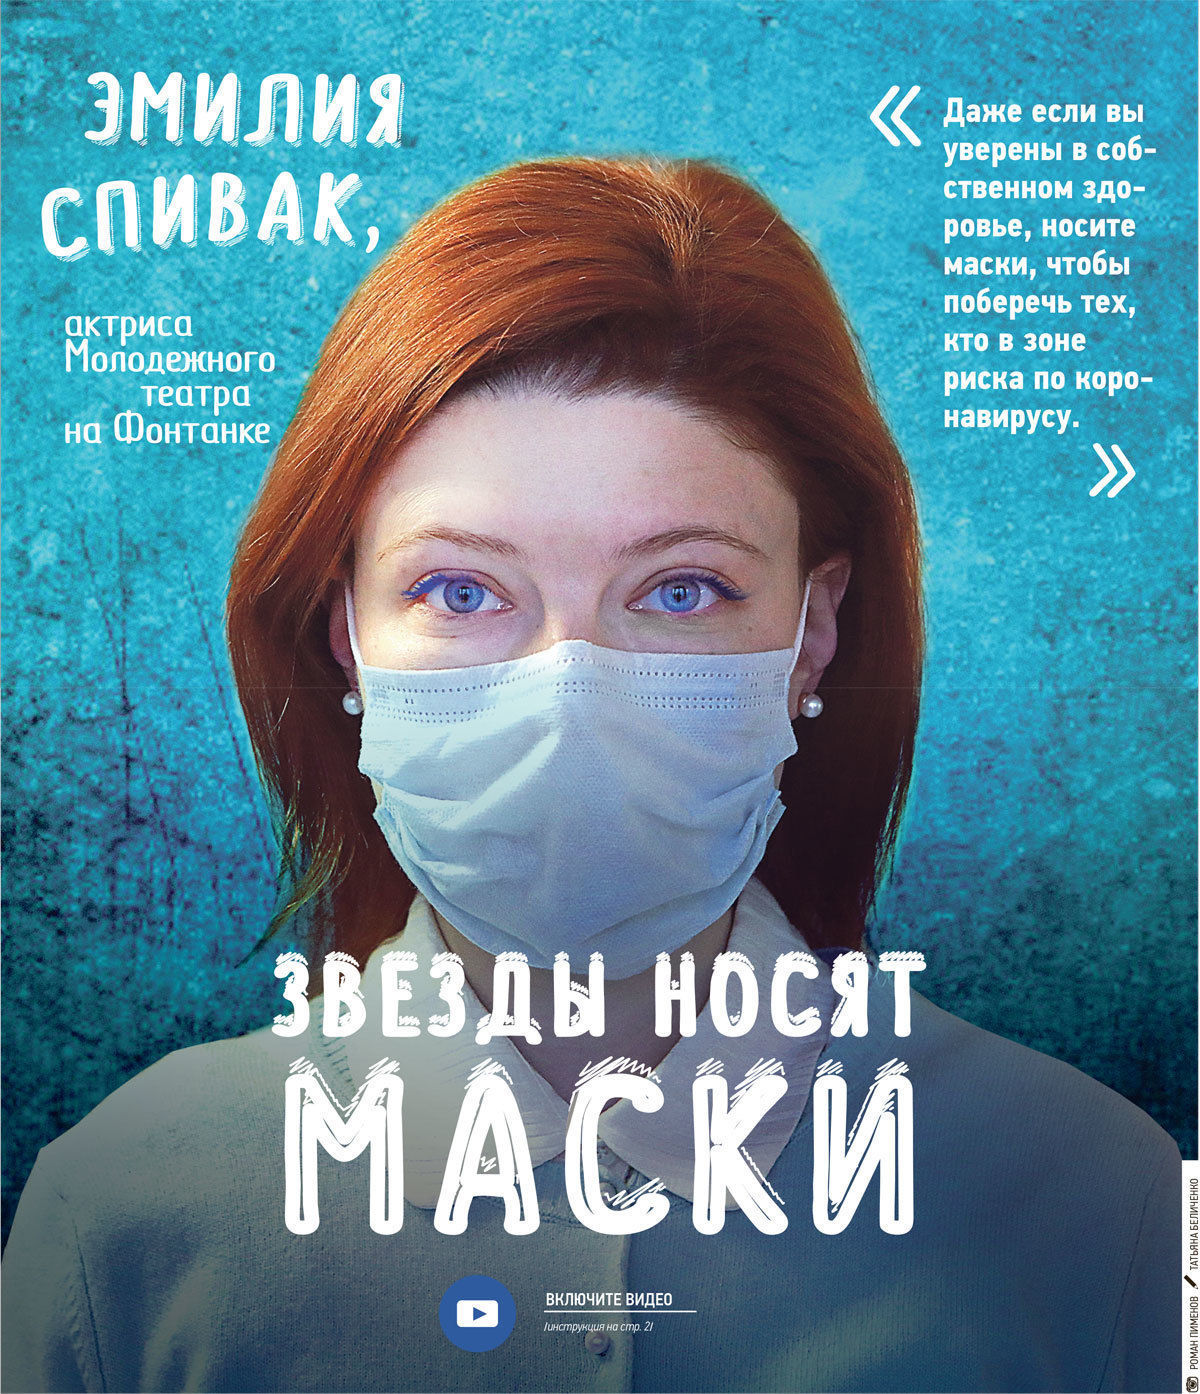 Эмилия Спивак: «Маску надо носить, чтобы сберечь тех, кто в зоне риска» 